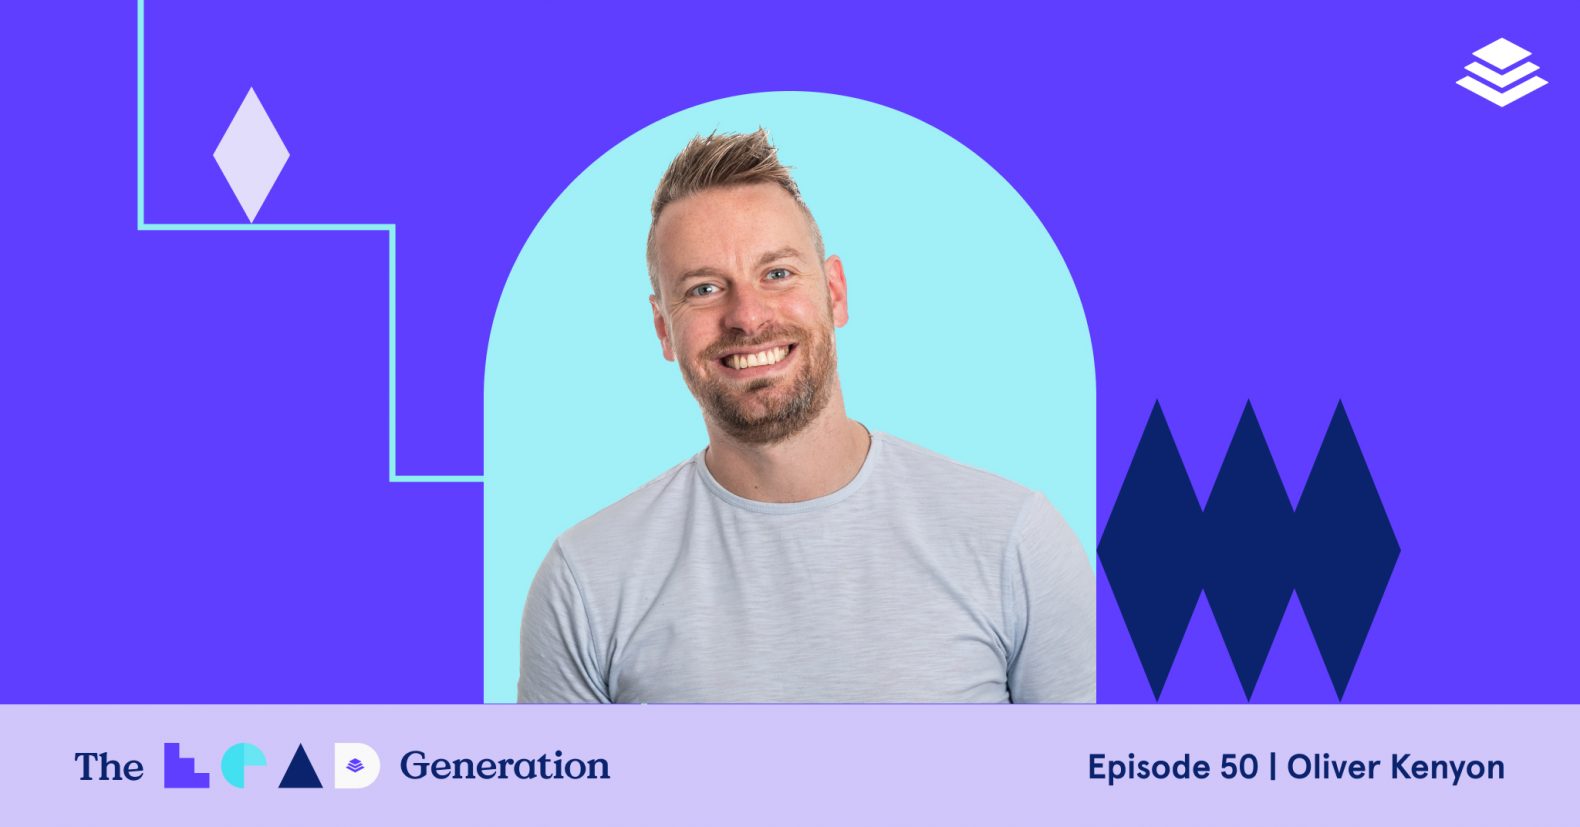 Épisode 50 du podcast Lead Generation : Oliver Kenyon